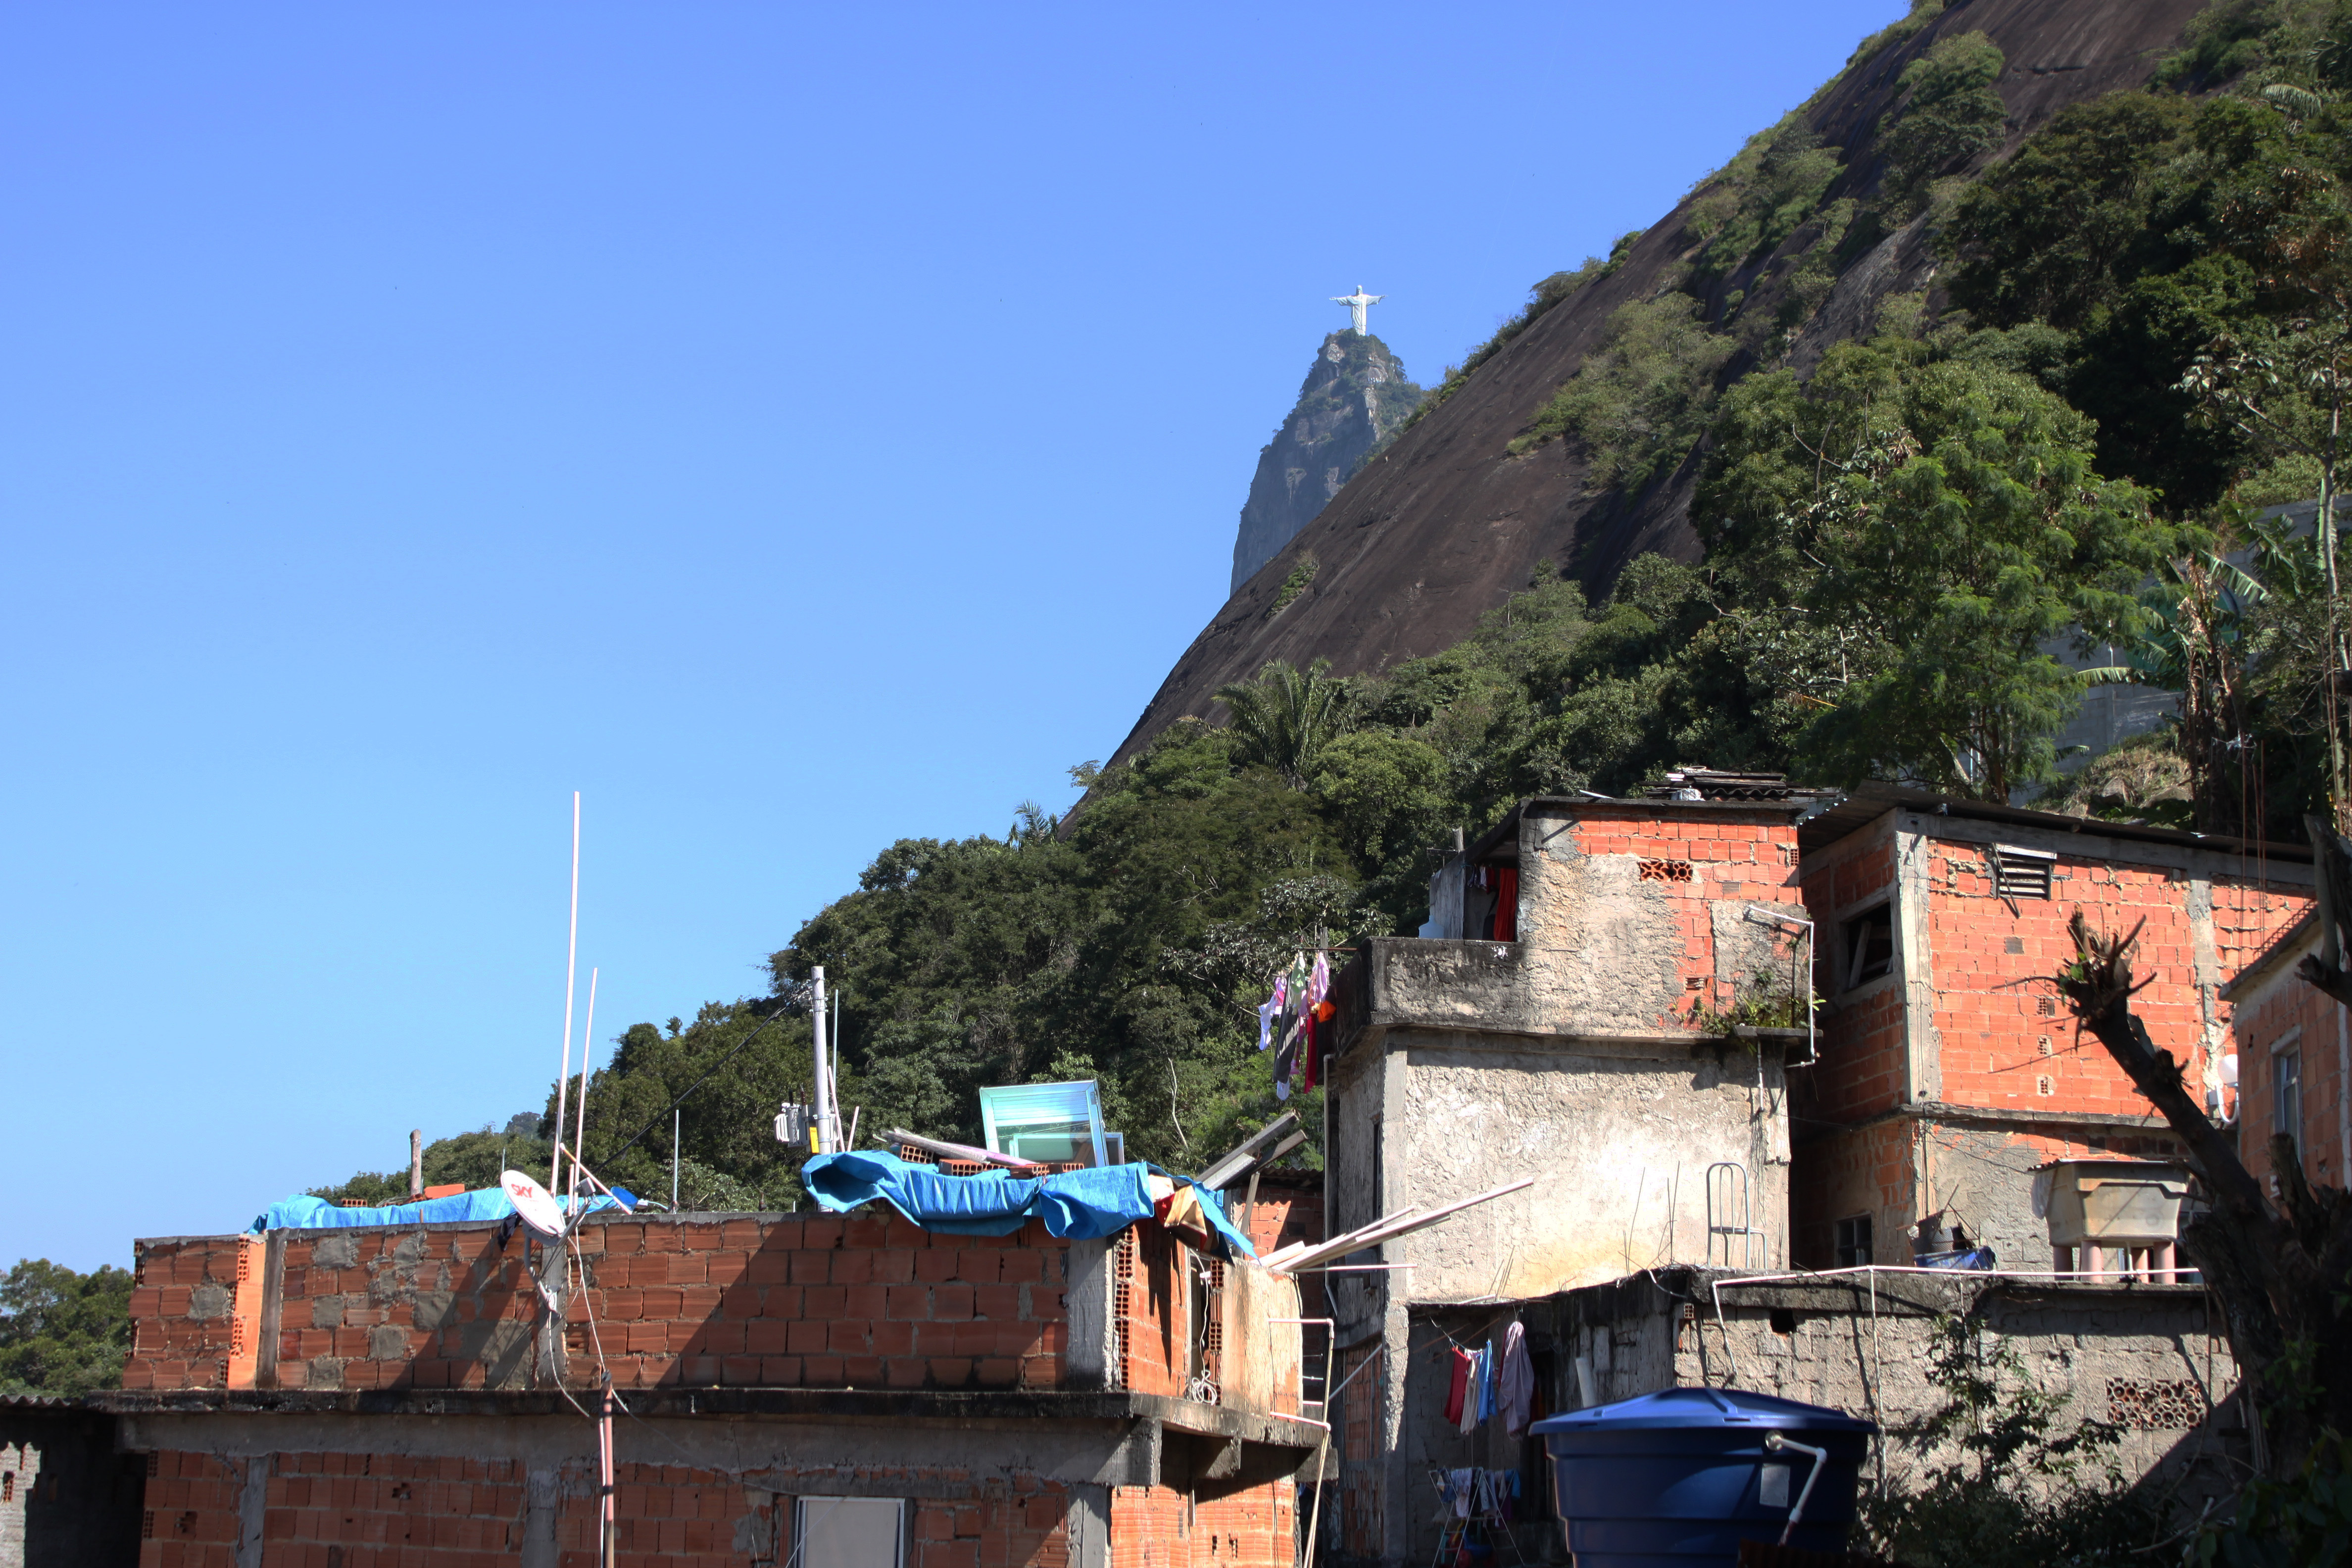 Turismo nas favelas é alvo de iniciativas para regulamentação